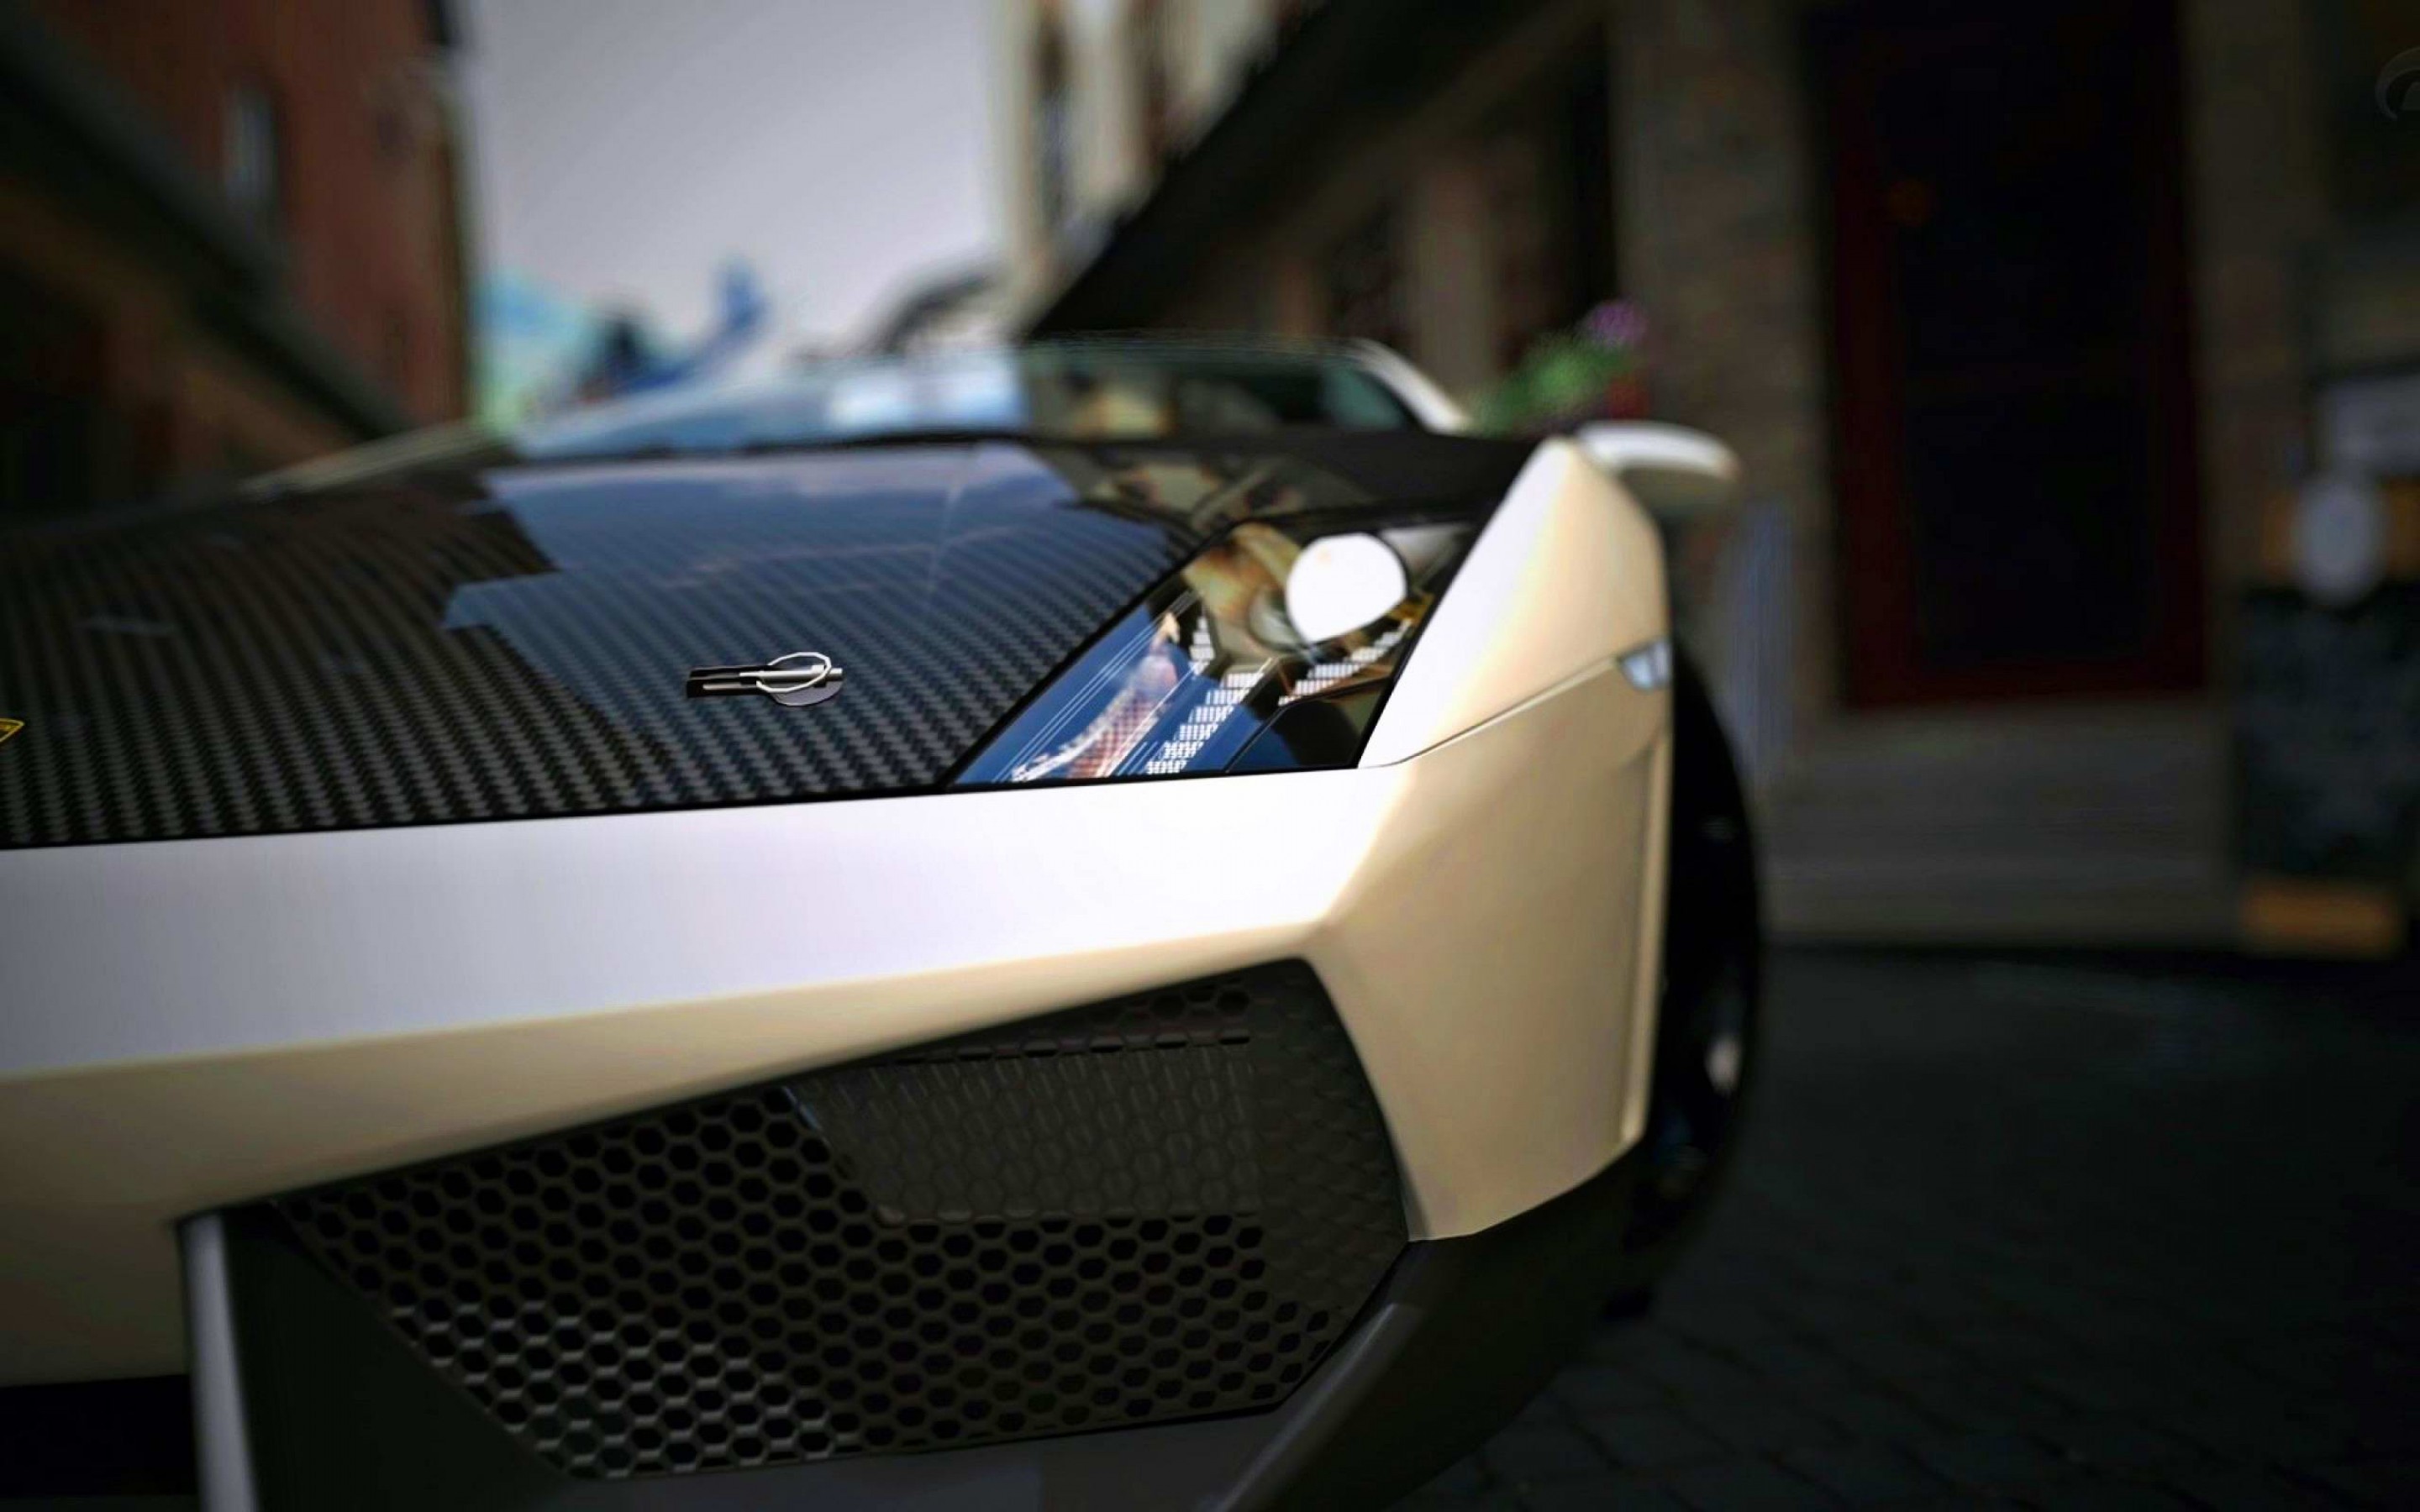 Lamborghini HD Wallpaper 1080p